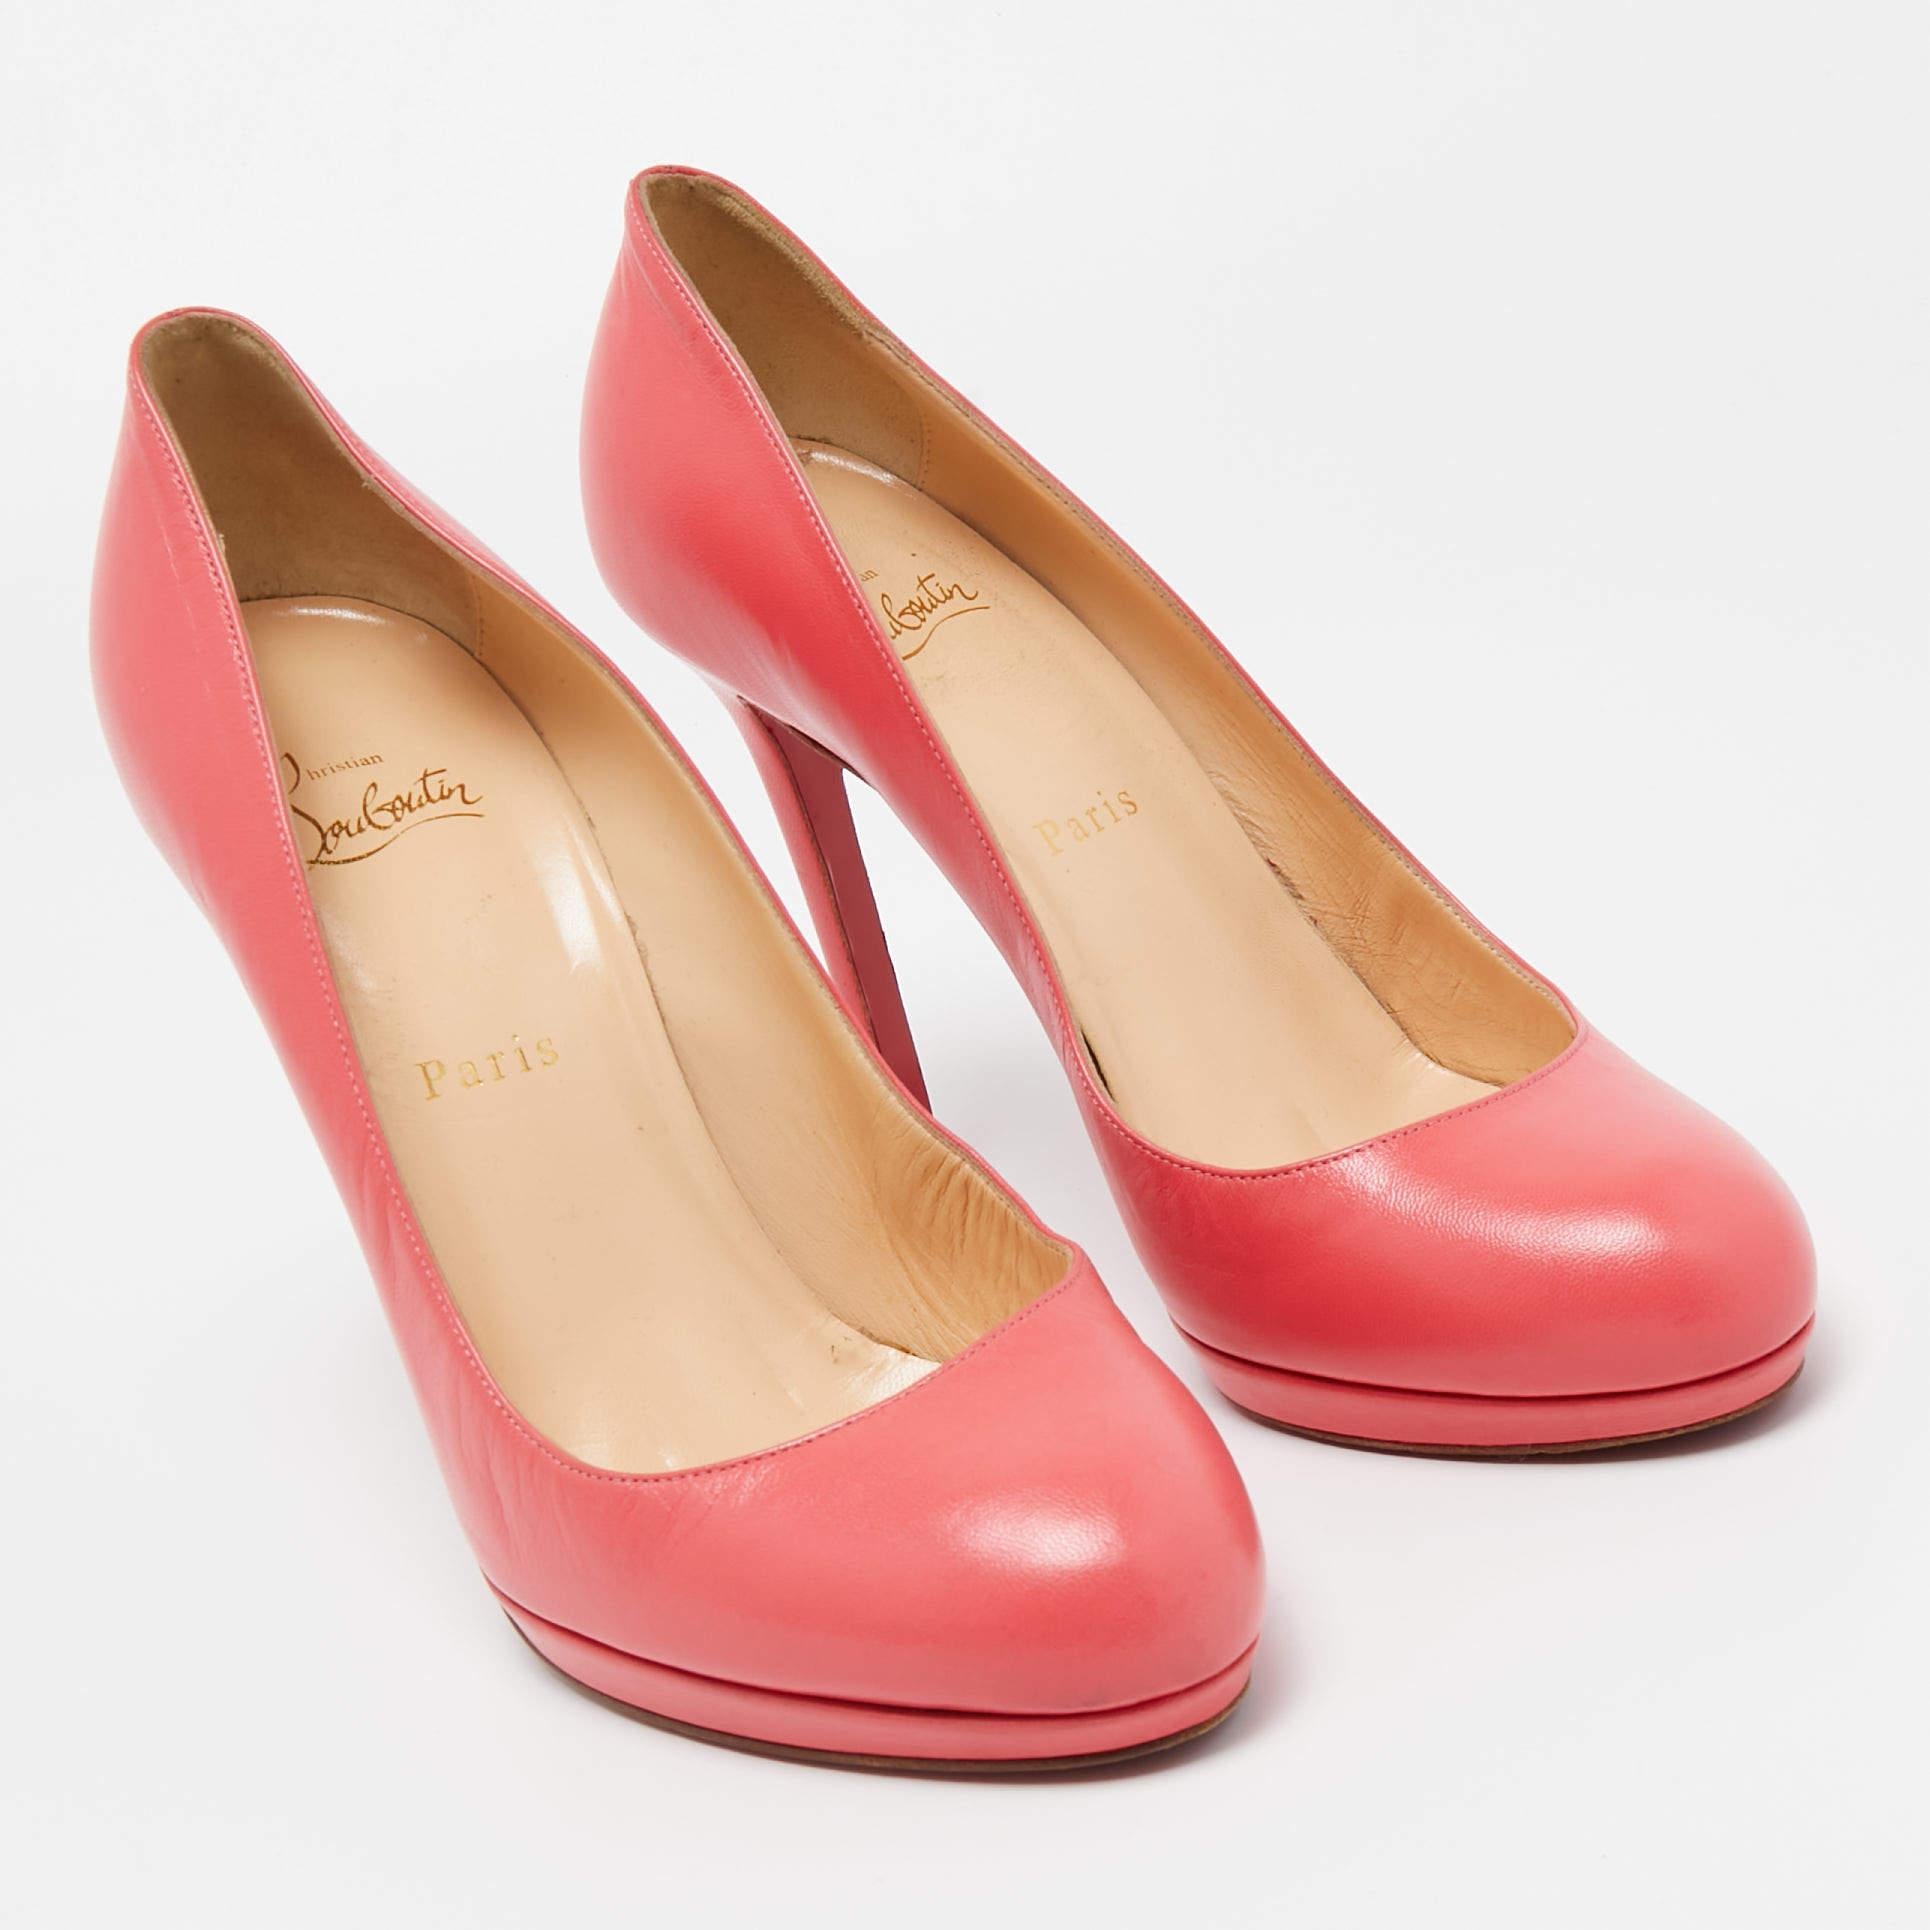 Perfekt genäht und verarbeitet, um ein elegantes Aussehen und eine gute Passform zu gewährleisten, sind diese rosafarbenen Schuhe von Christian Louboutin ein Kauf, den Sie gerne zur Schau stellen werden. Sie sehen toll an den Füßen aus.

